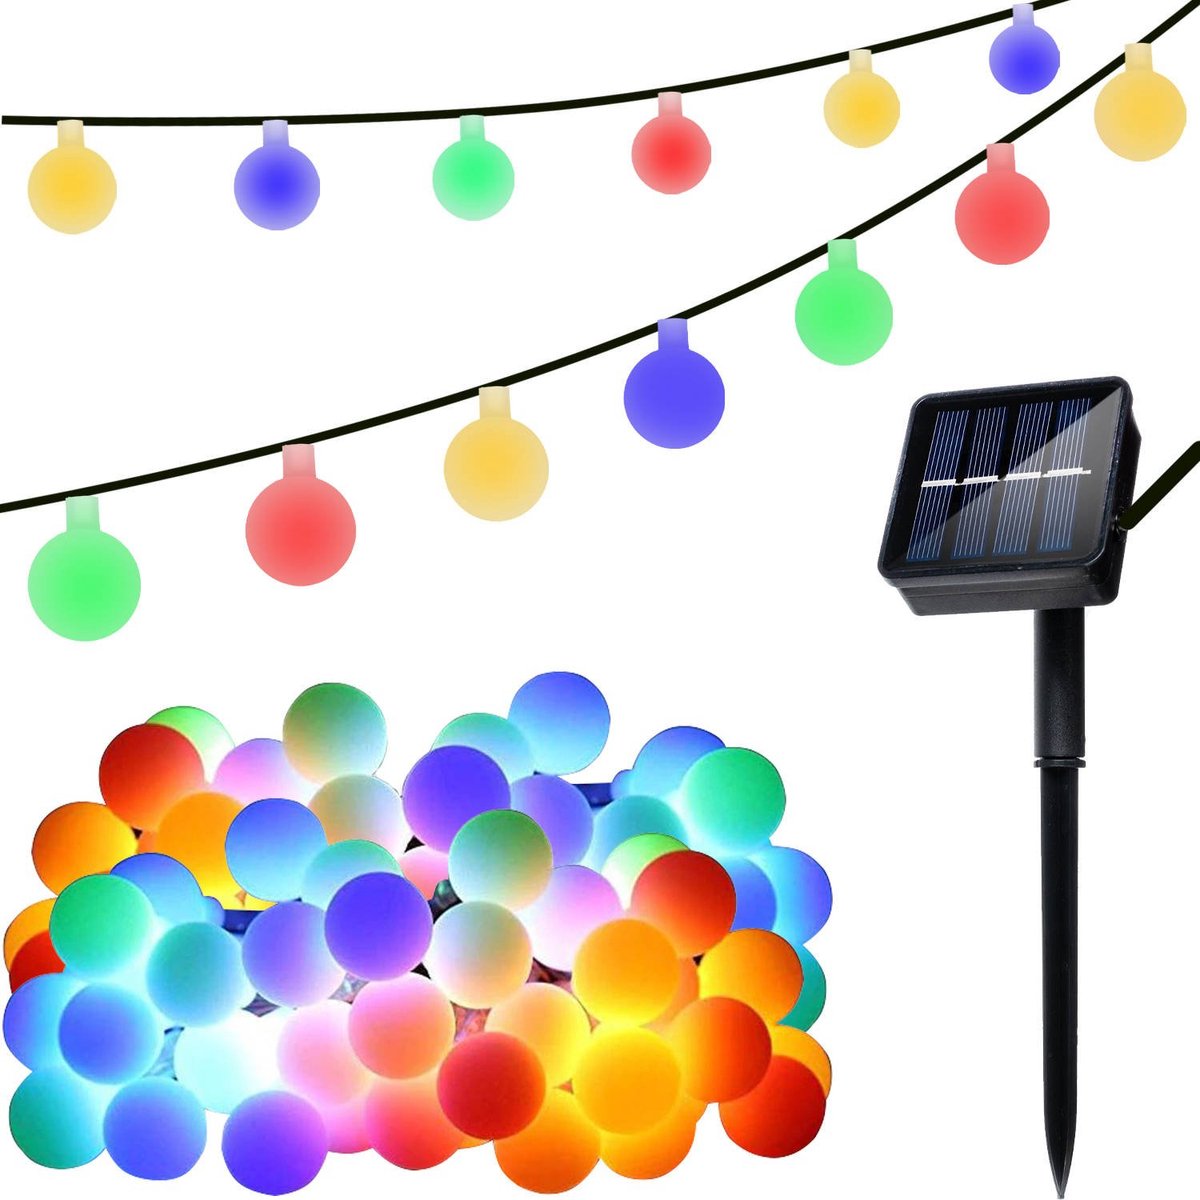 Tuinverlichting - Lichtslinger - Op  Zonne- Energie -  6.70M - Multi Kleur - ø2cm - 50 Solar Color LED - Met 8 Standen - IP65 - iso trade